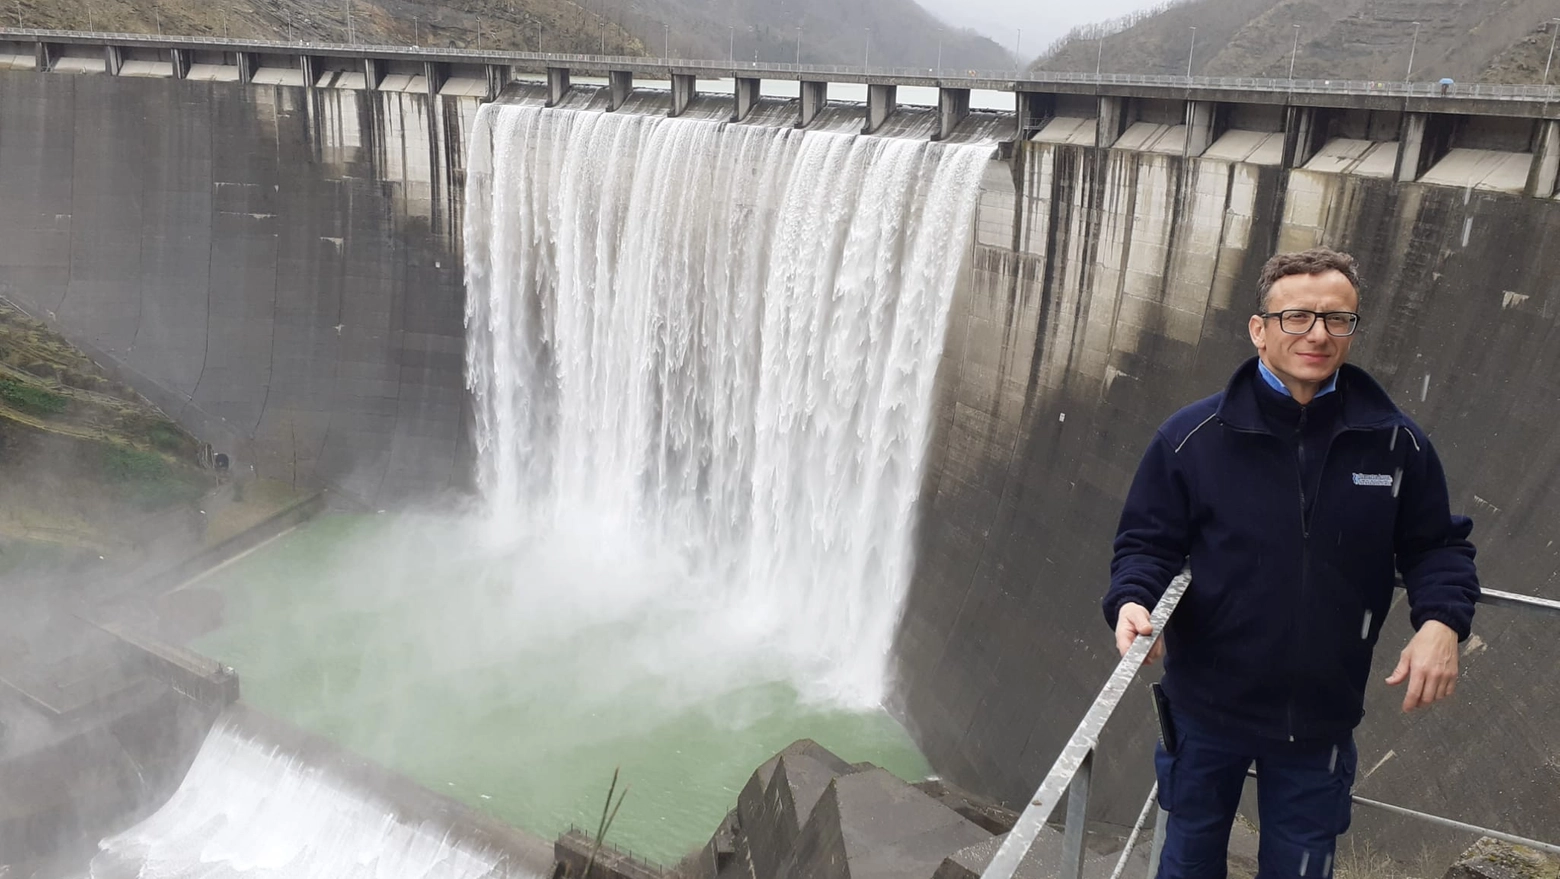 Il primo giorno di marzo le acque del lago di Ridracoli hanno raggiunto lo sfioro della diga formando una imponente cascata